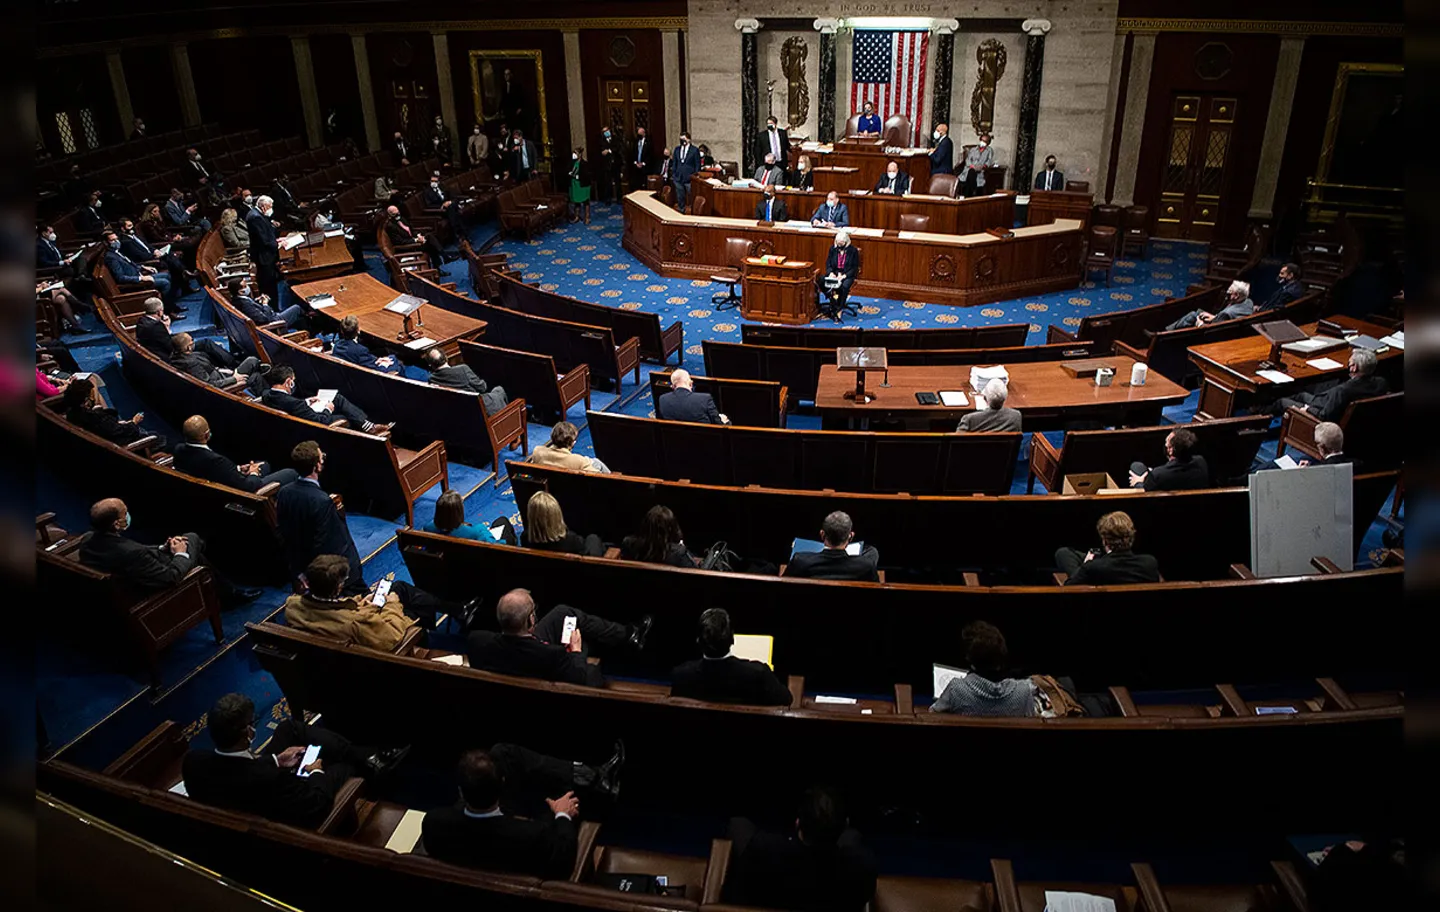 Congresso dos EUA retomou sessão depois da invasão pró-Trump | Foto: Getty Images via AFP